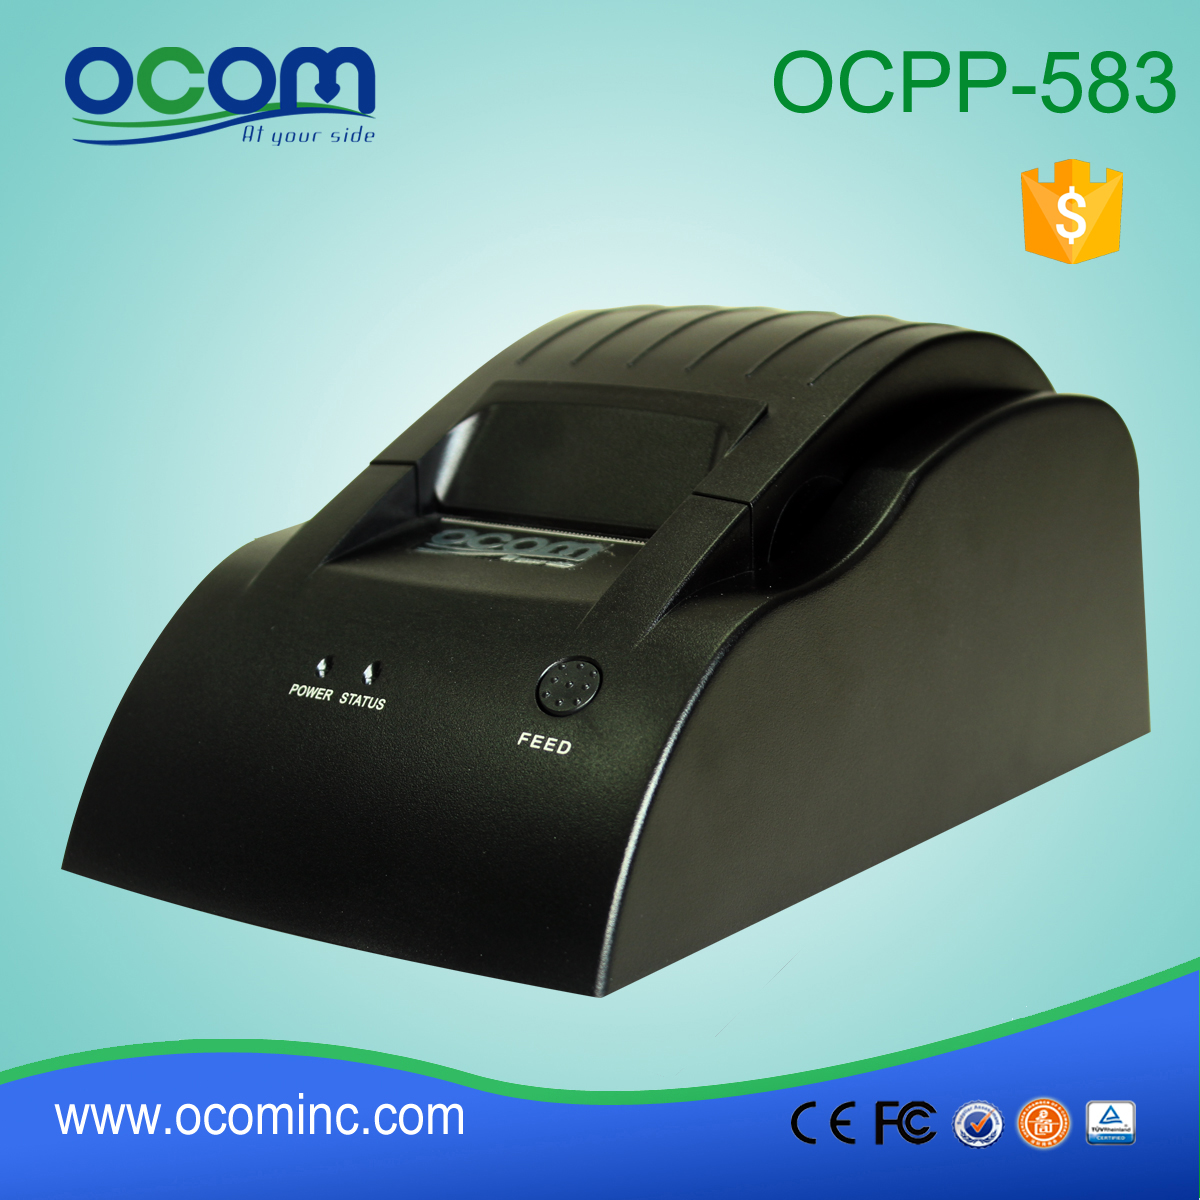 OCPP-583 Imprimante de reçus thermiques directs 58MM